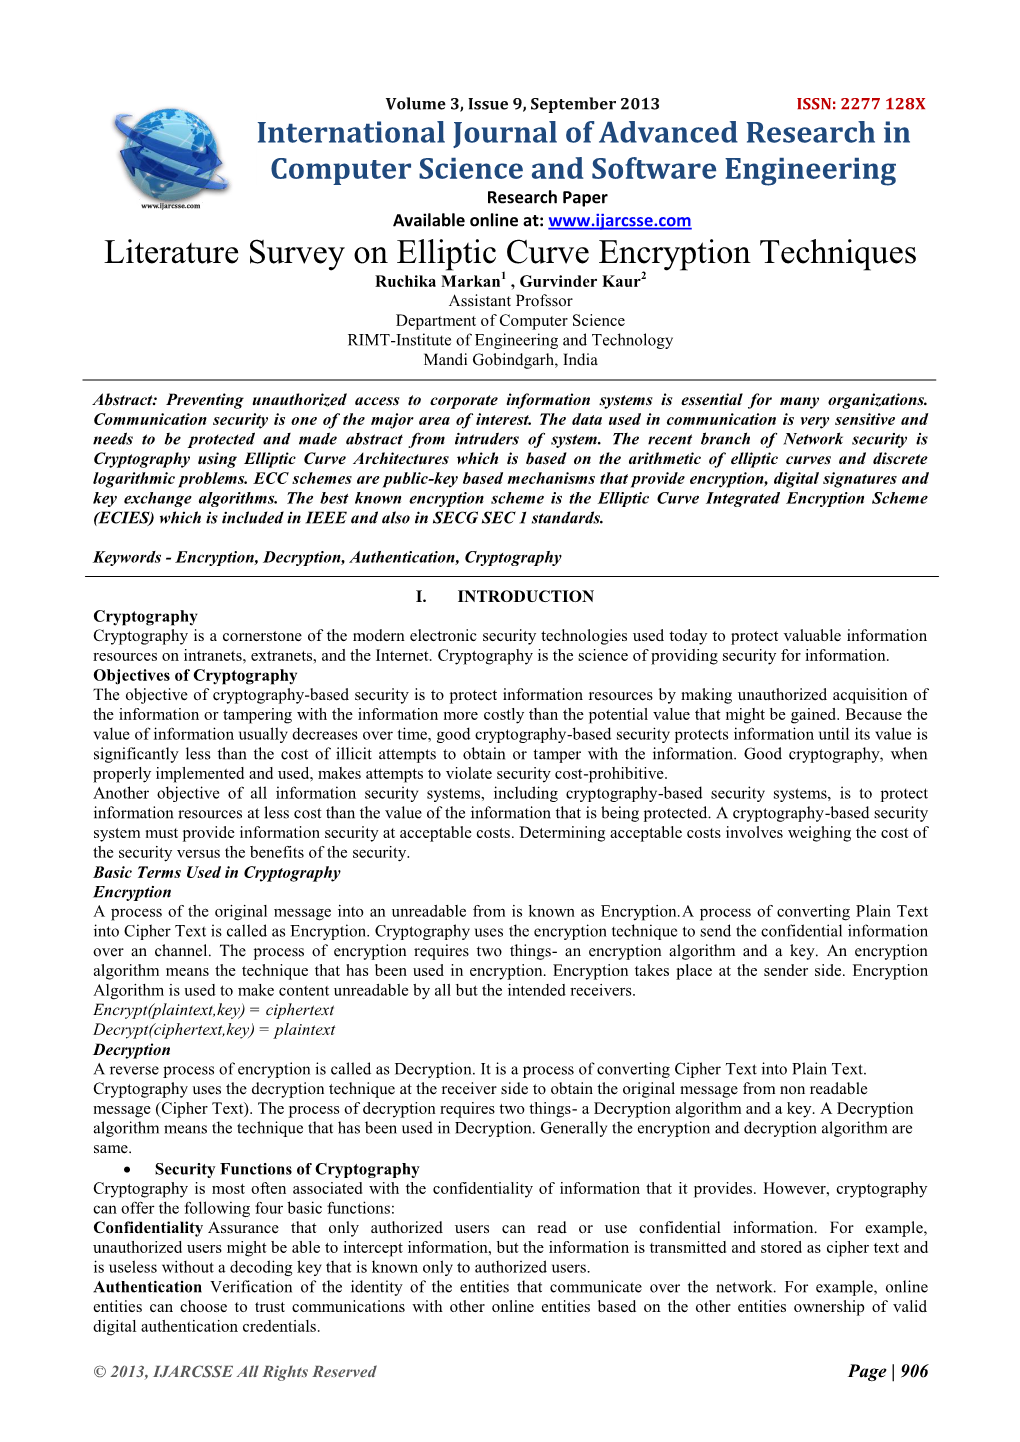 Literature Survey on Elliptic Curve Encryption Techniques